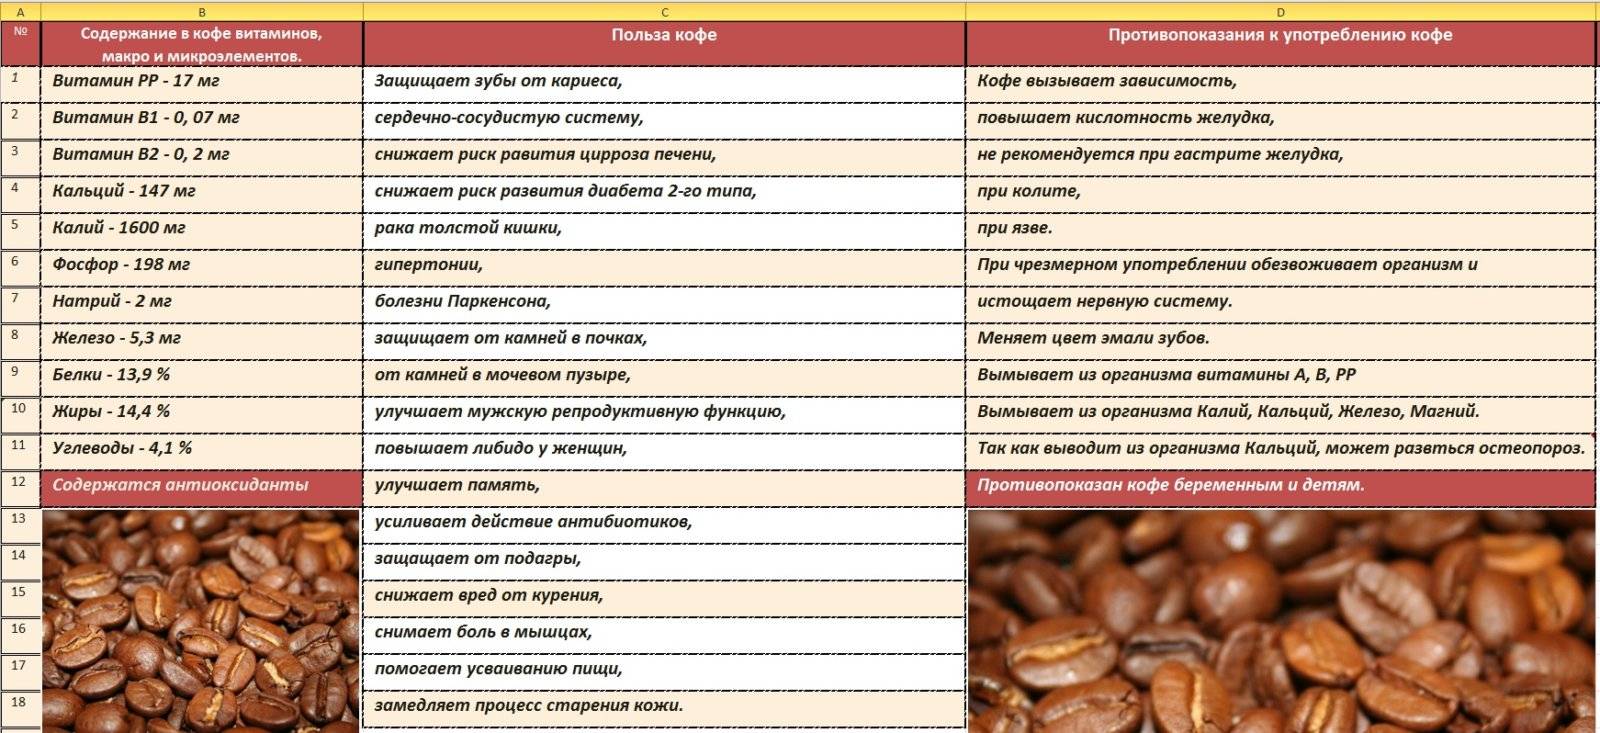 Кофе — польза и вред для здоровья. повышает или понижает давление кофе? как правильно выбрать хороший кофе?